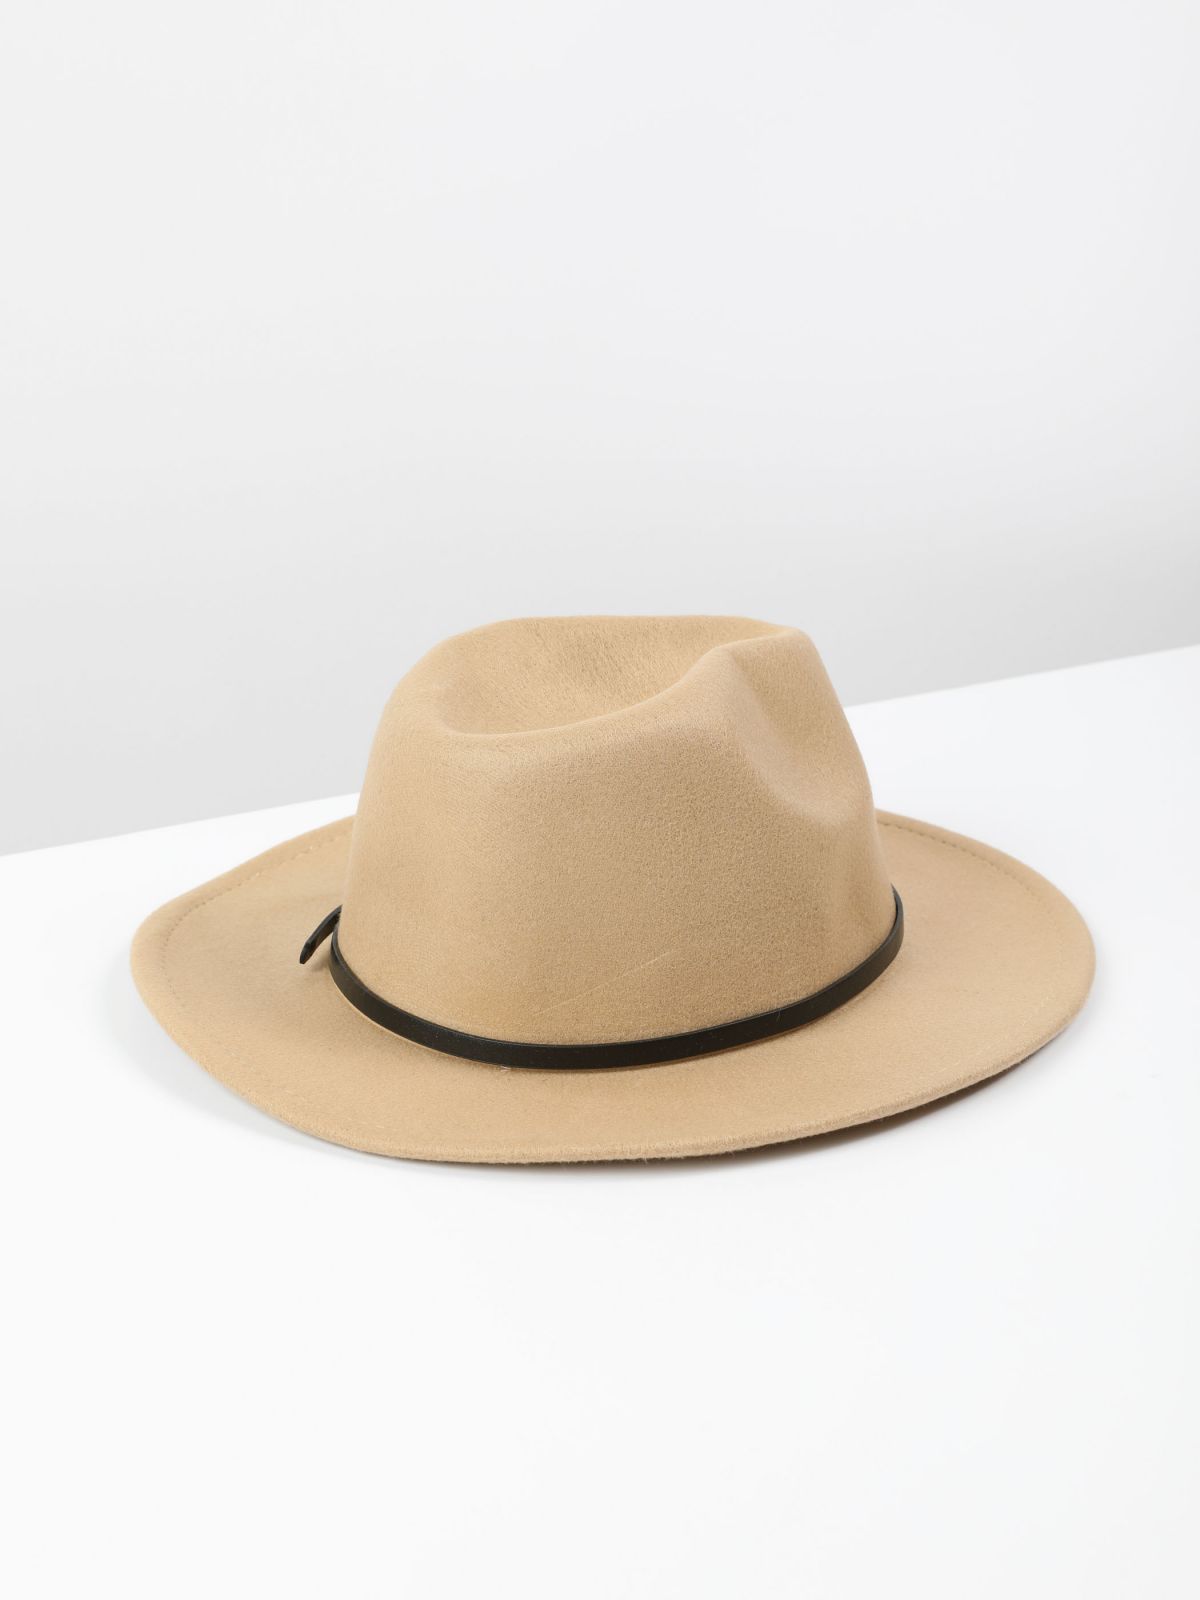  כובע רחב שוליים עם רצועה / נשים של YANGA